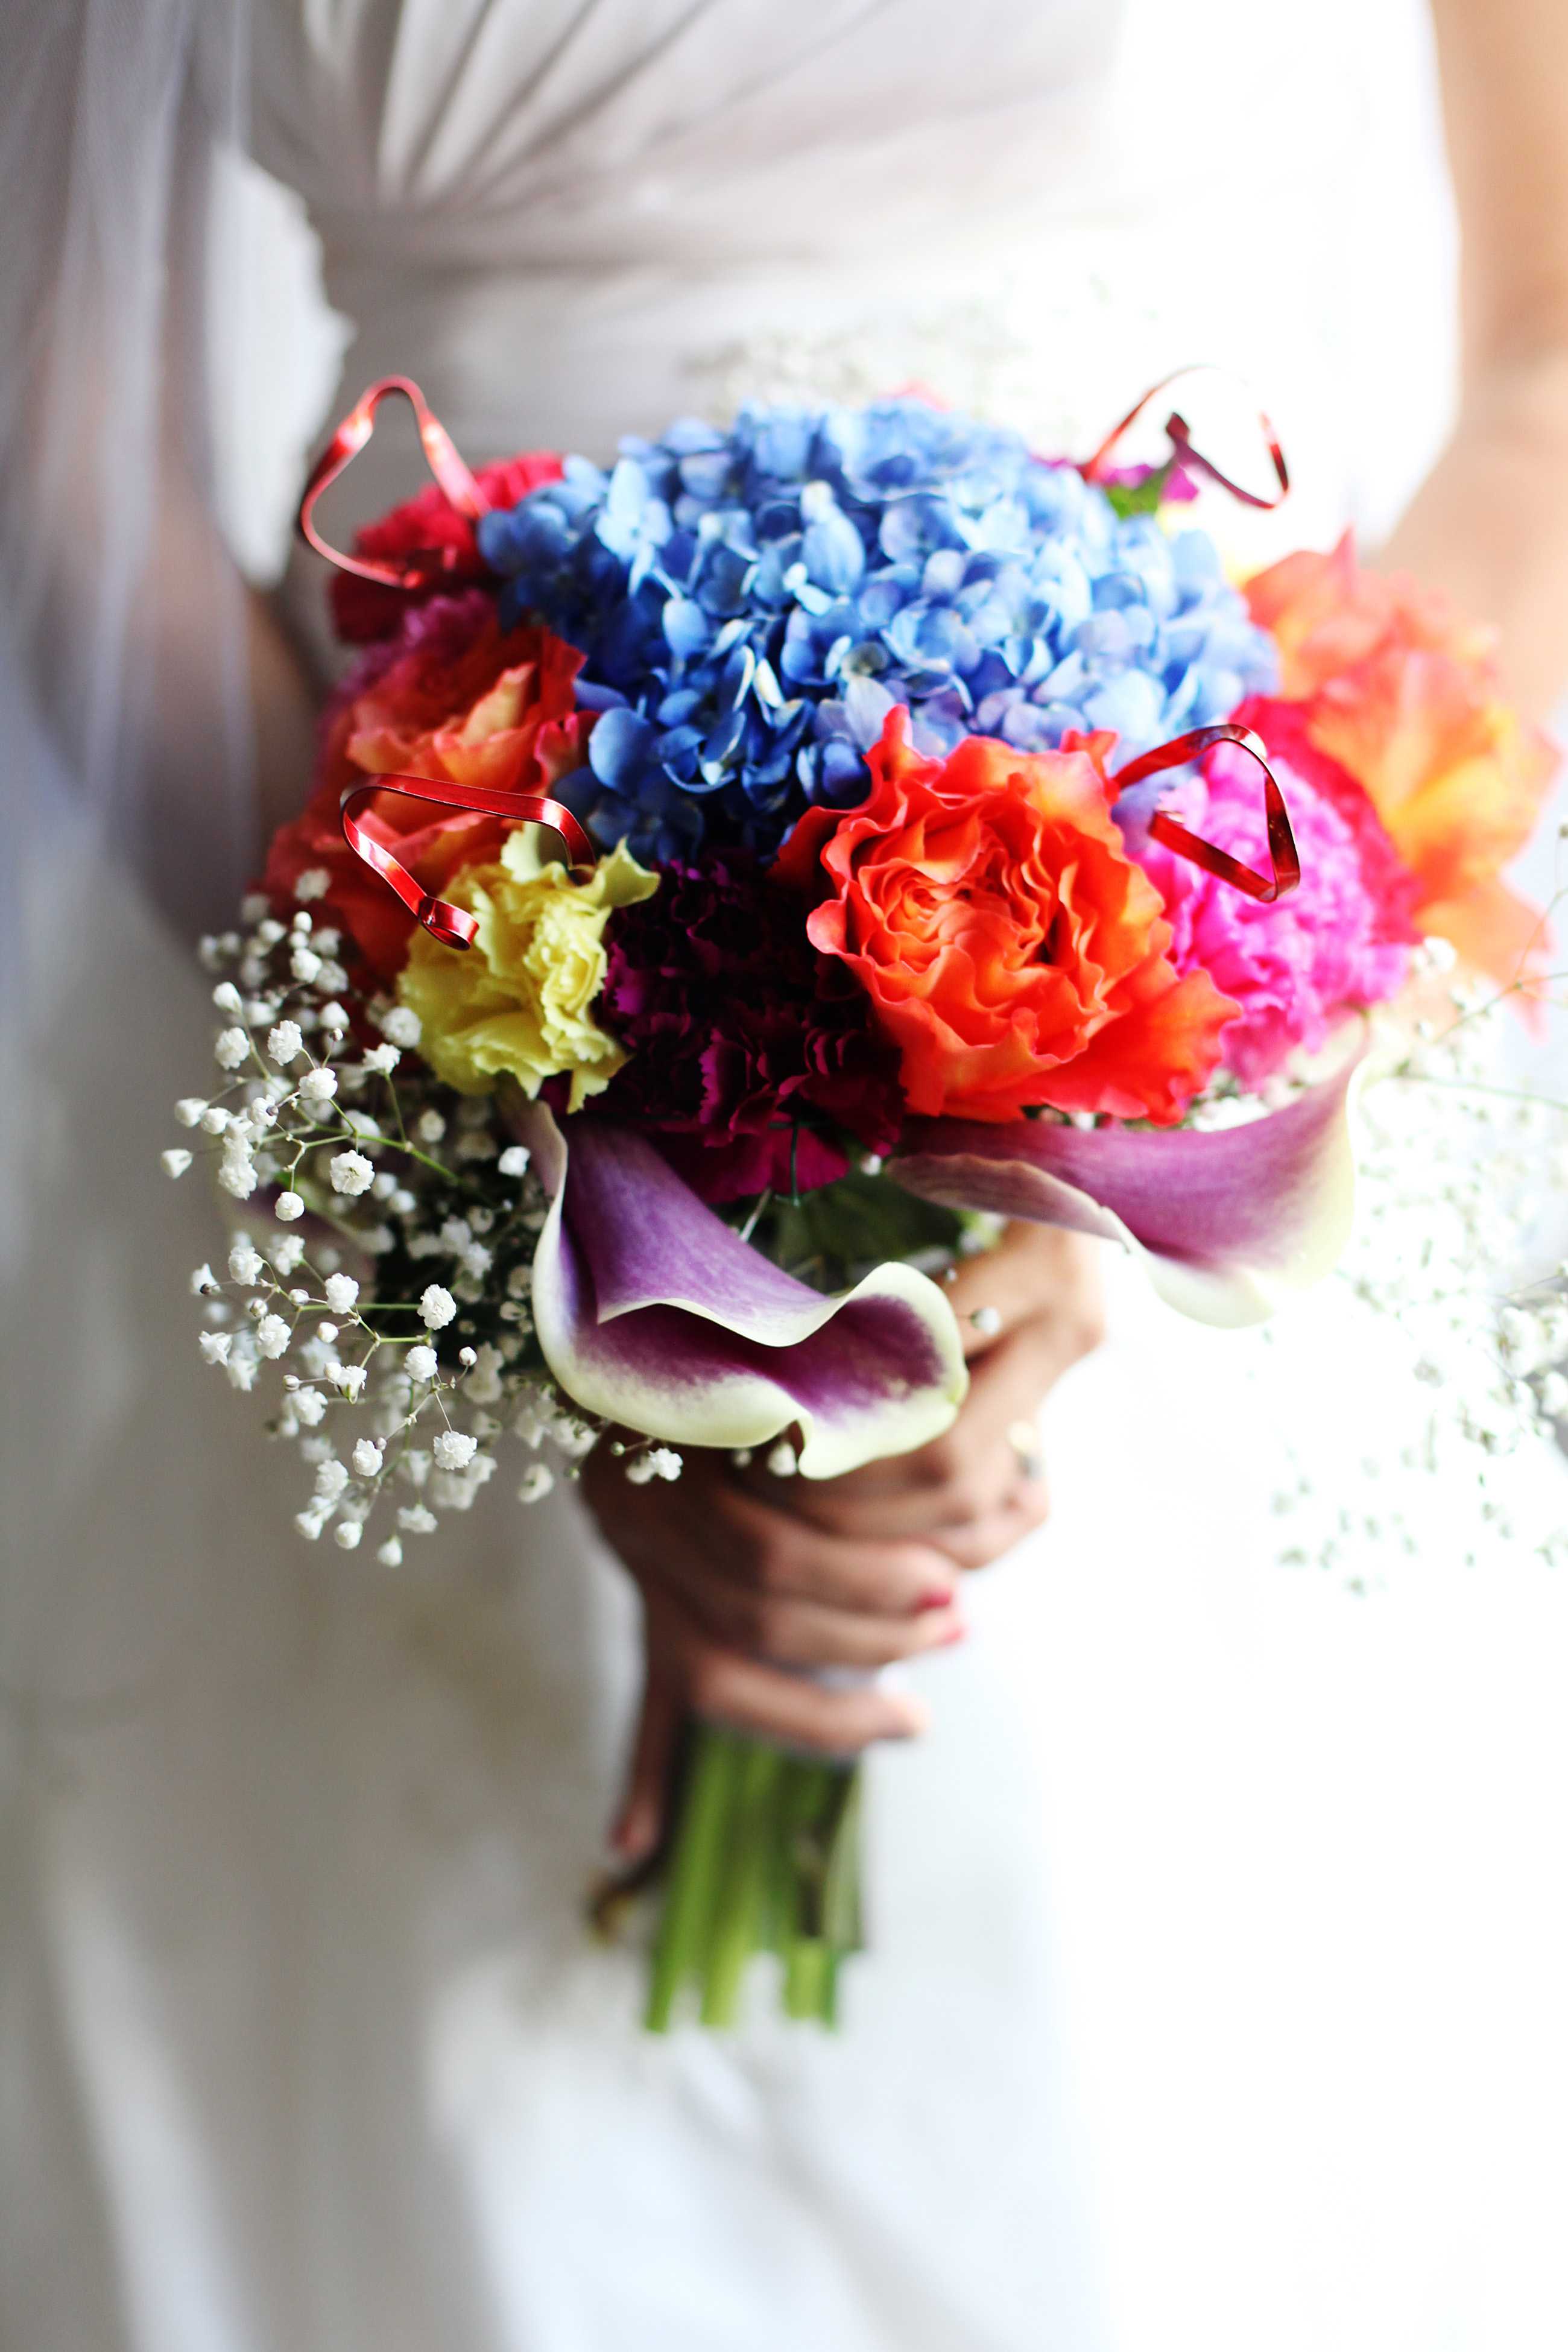 Дизайнерские свадебные букеты - это возможность добавить любой свадьбе неповторимую изюминку Но в этой сфере флористики тоже есть своя мода Обзор свежих трендов в оформлении цветов для невесты и много фото авторских работ